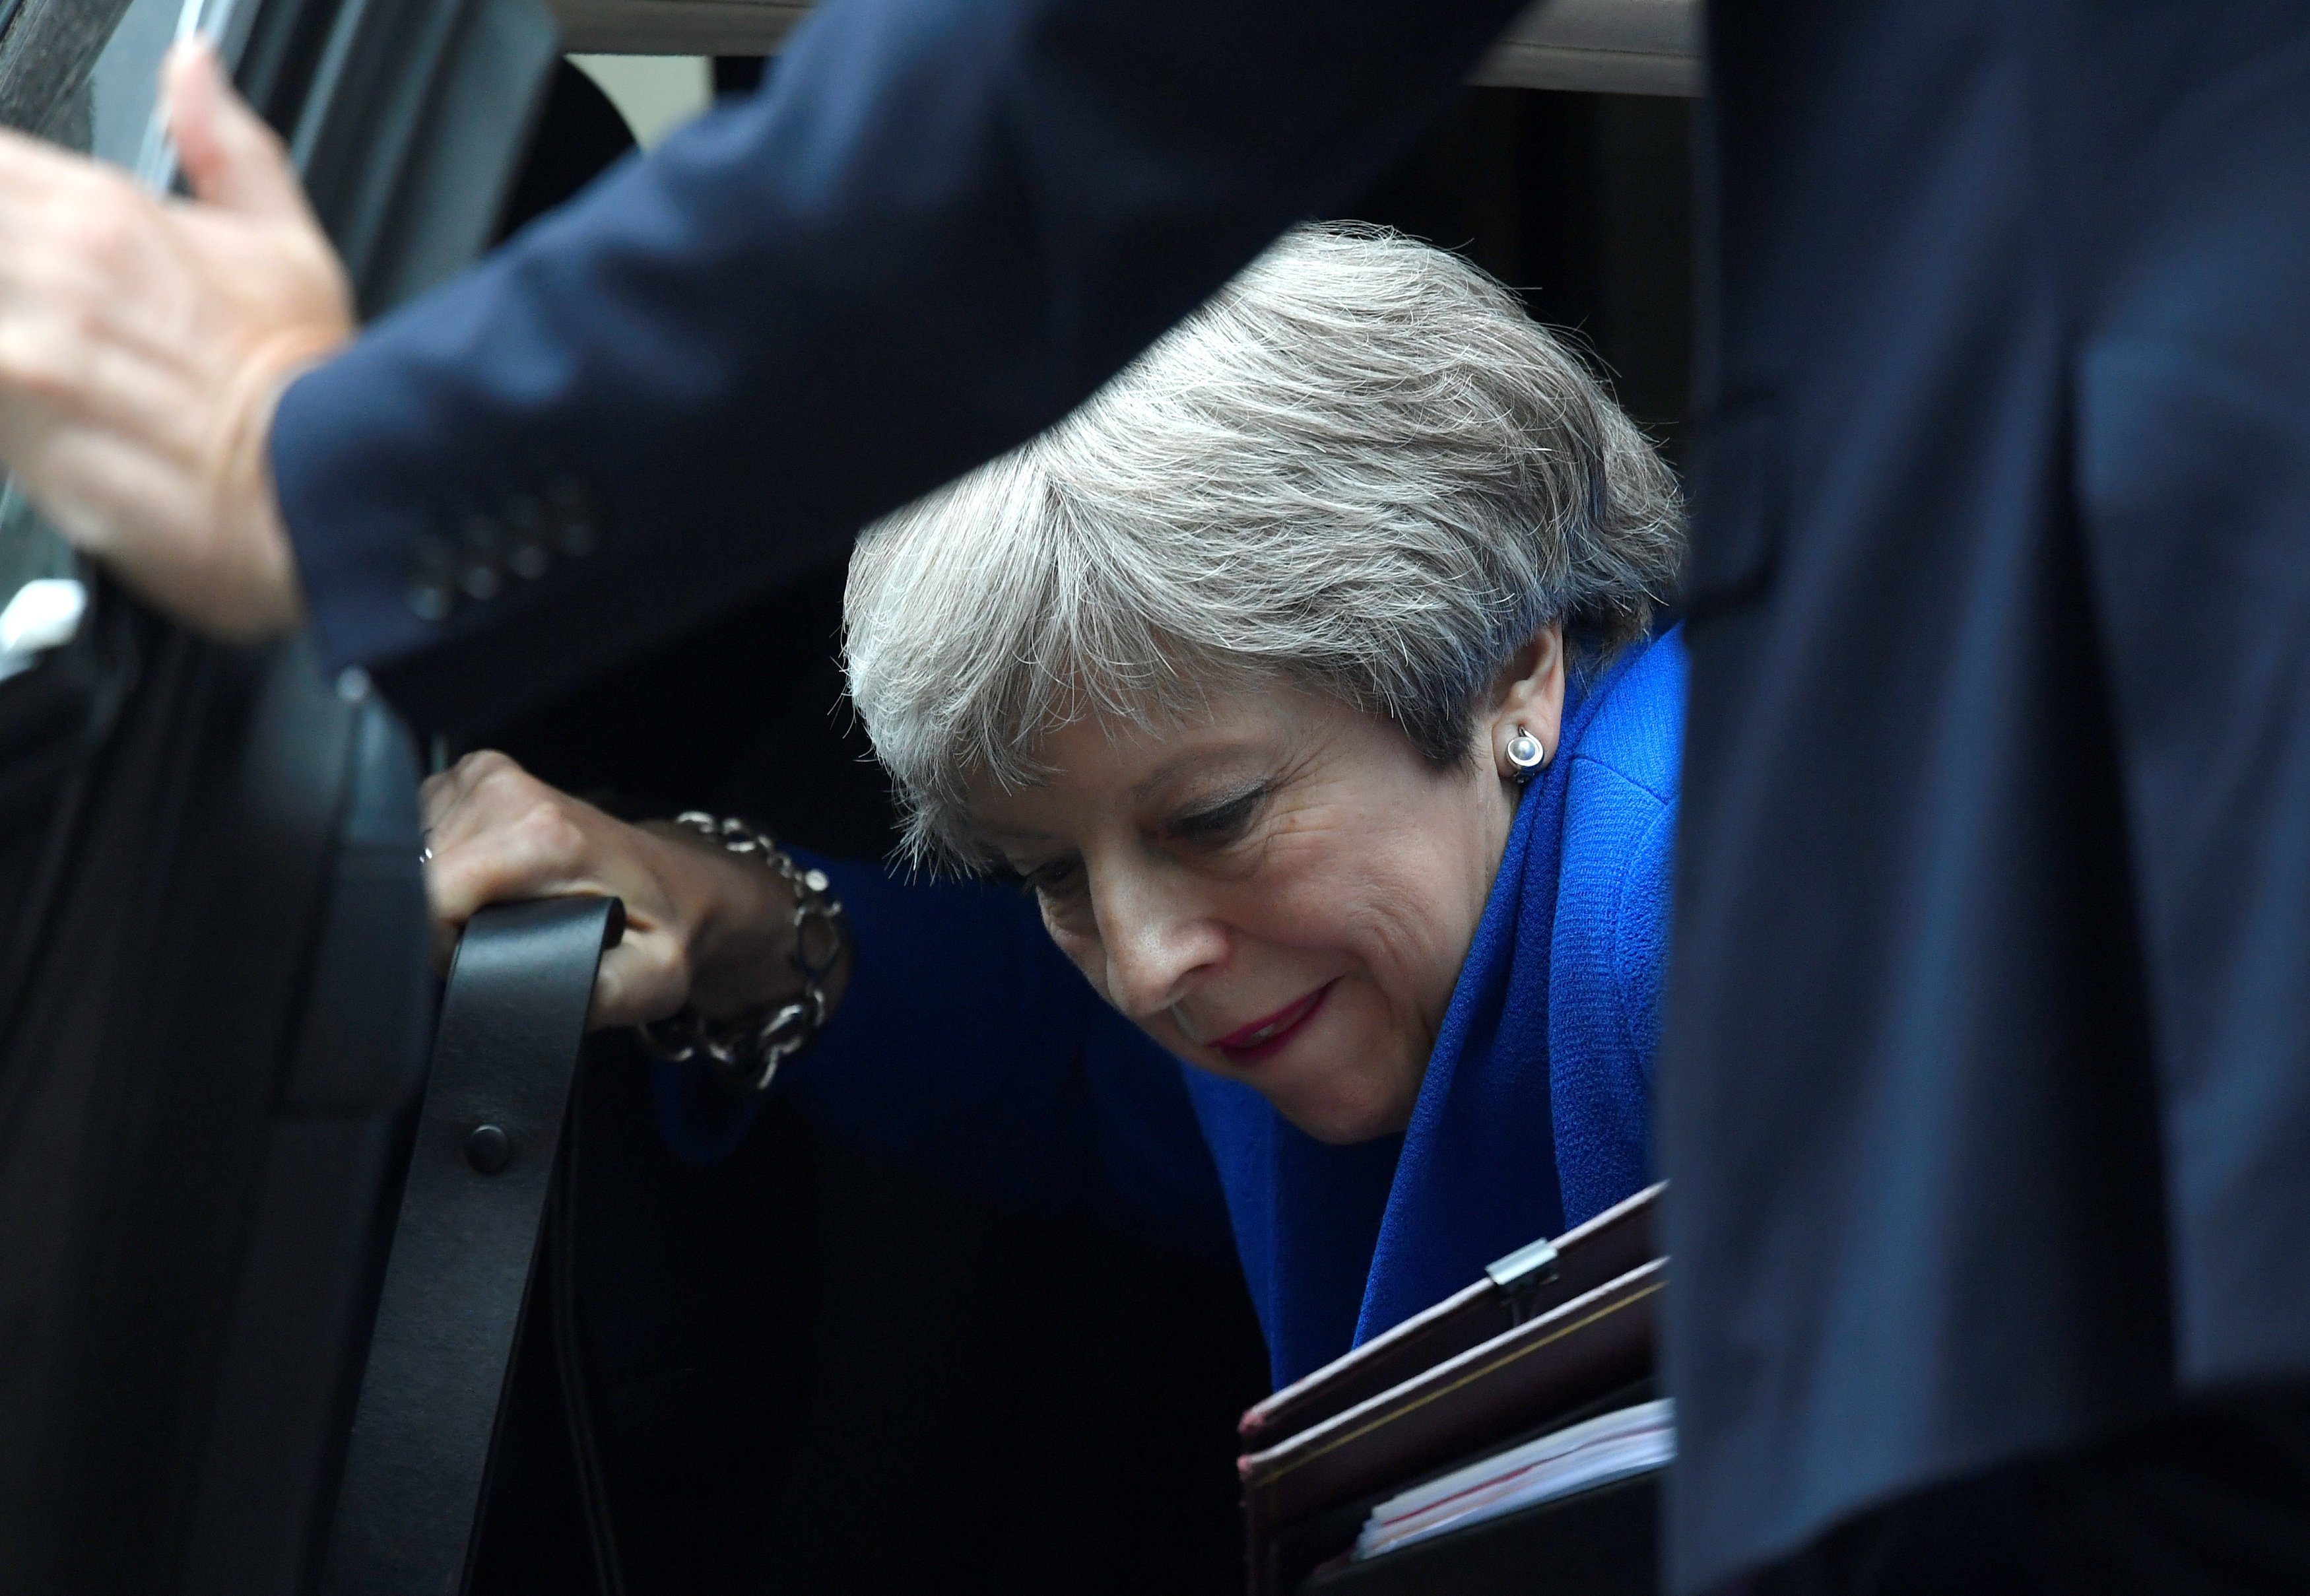 Avert a Brexit car crash: Auto industry warns Theresa May